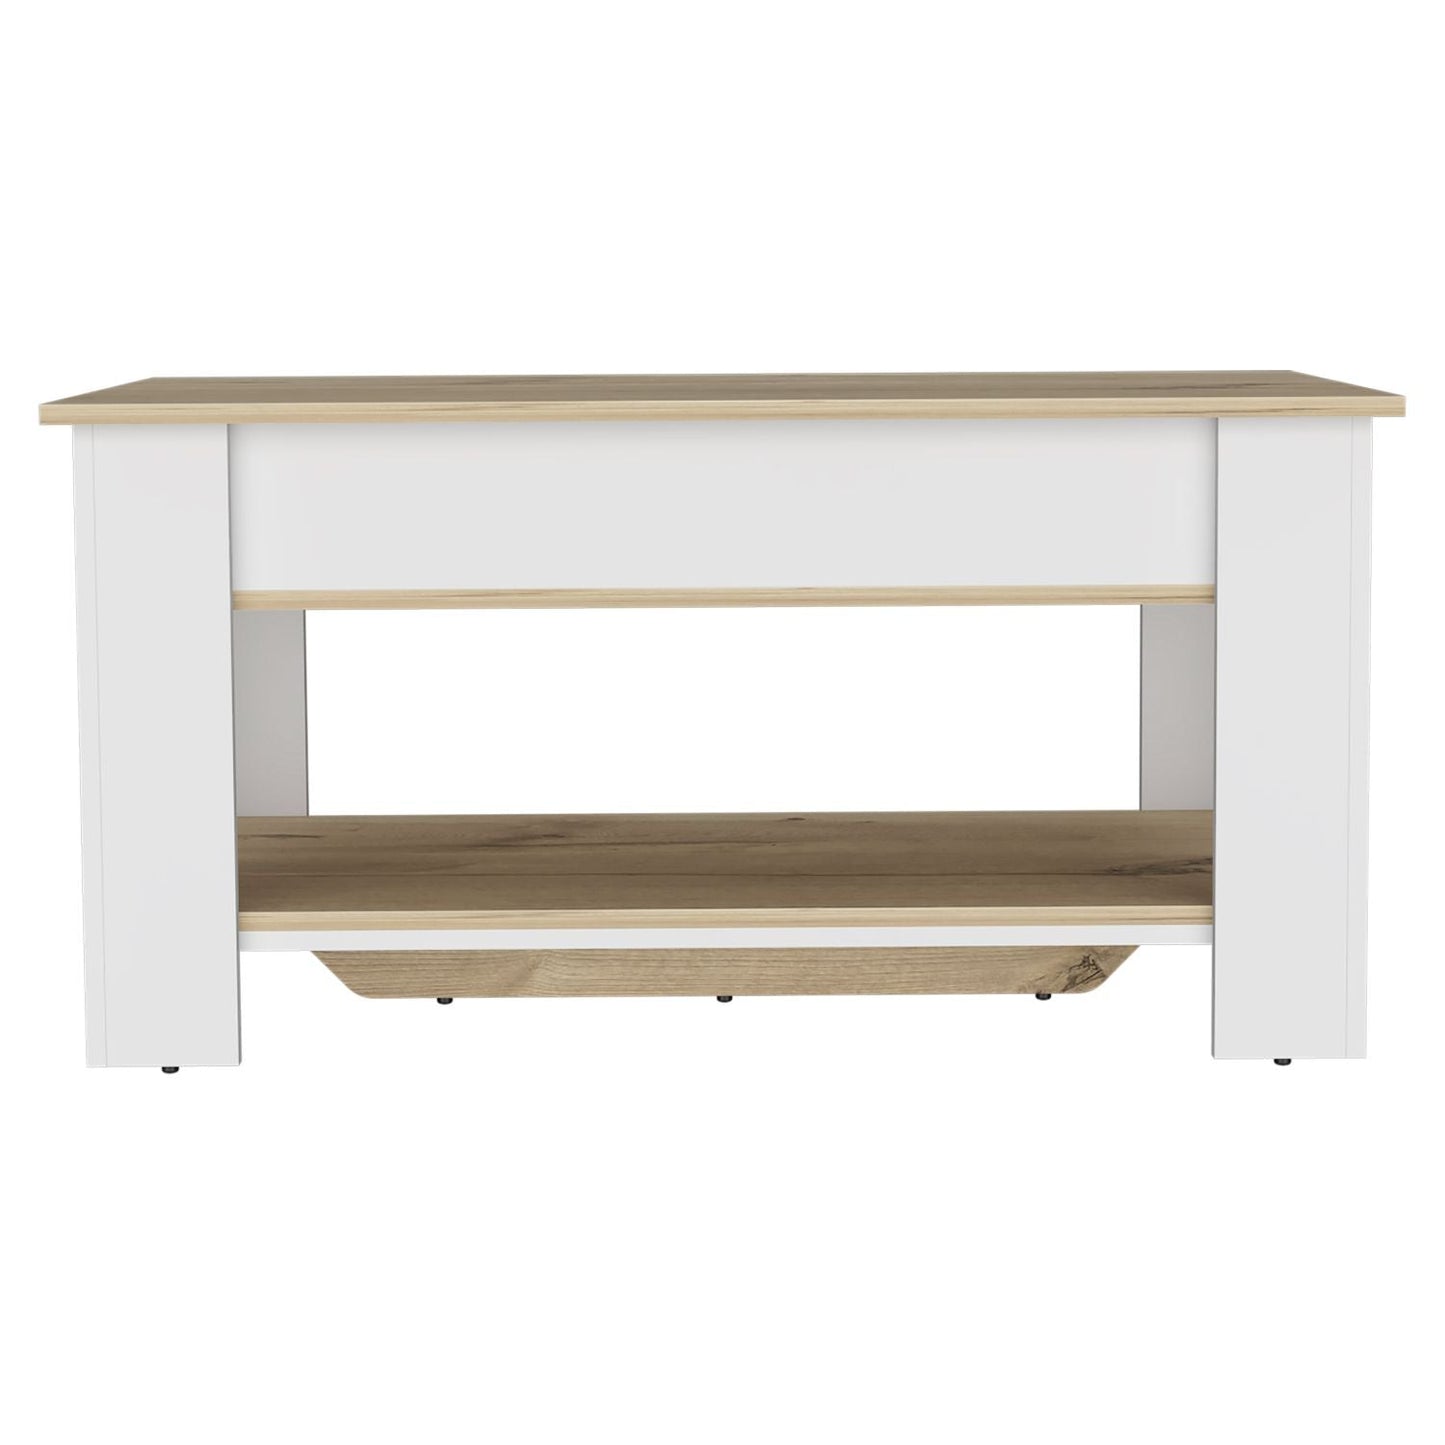 Storage Table Polgon, Extendable Table Shelf, Lower Shelf, Light Oak / White Finish-4